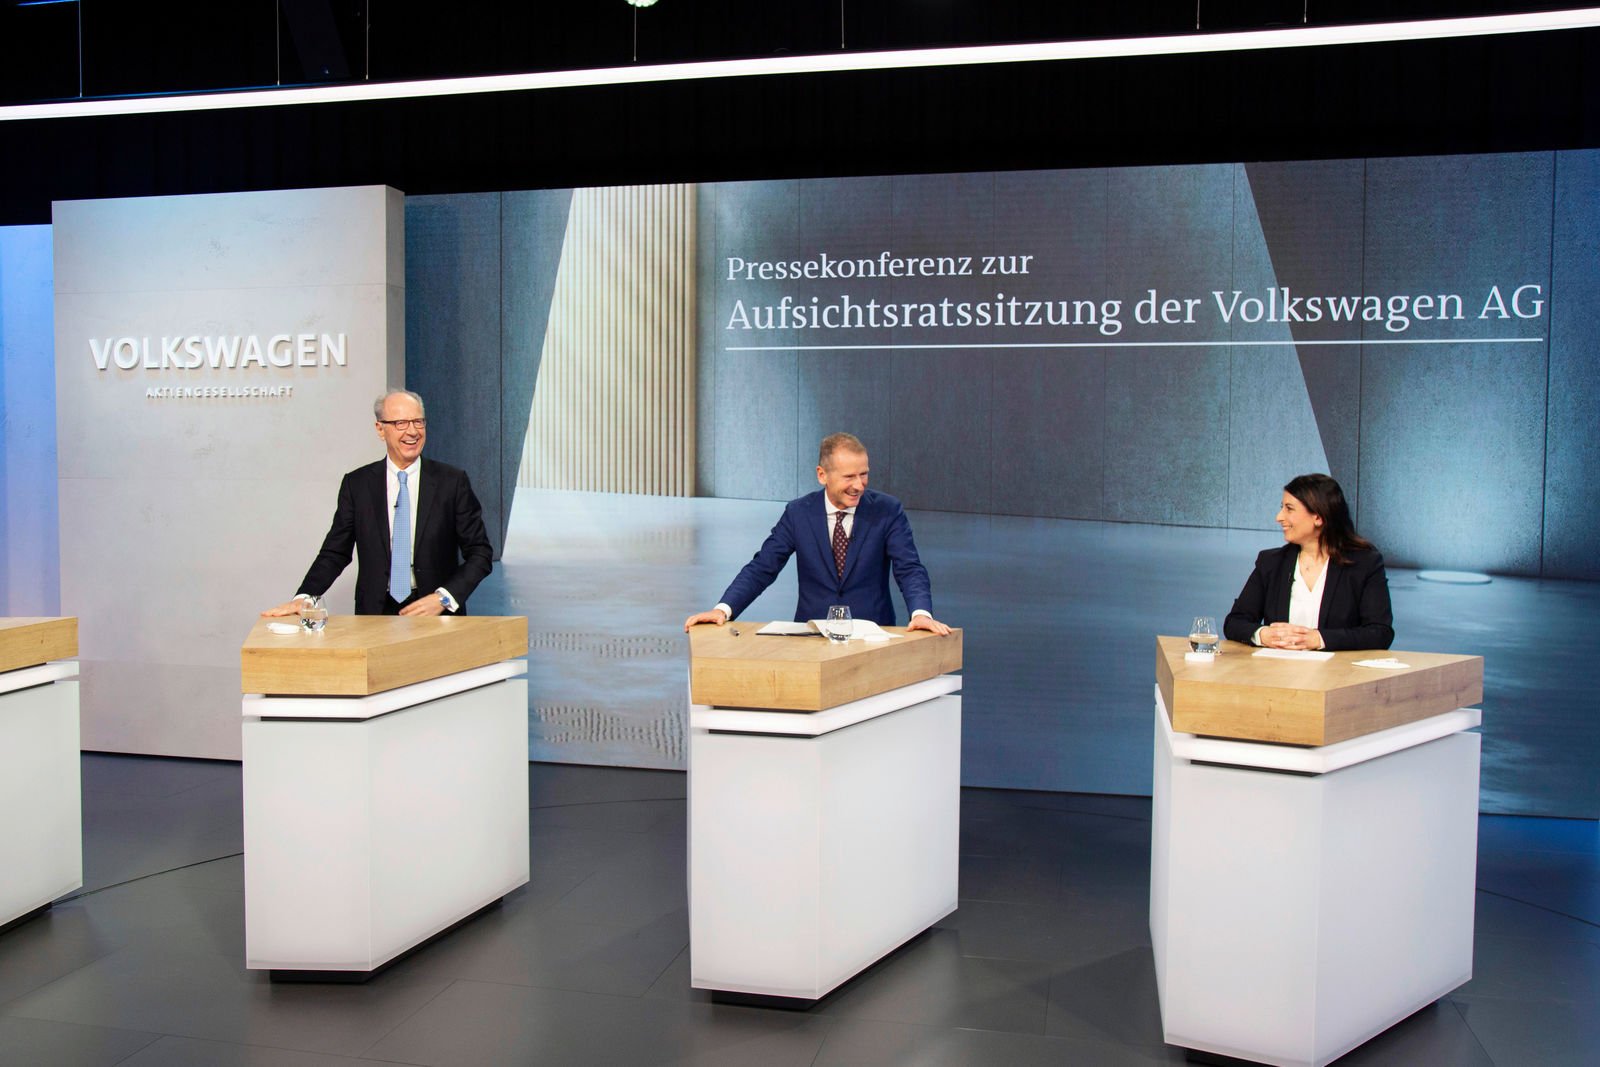 Pressekonferenz zur Aufsichtsratssitzung der Volkswagen AG